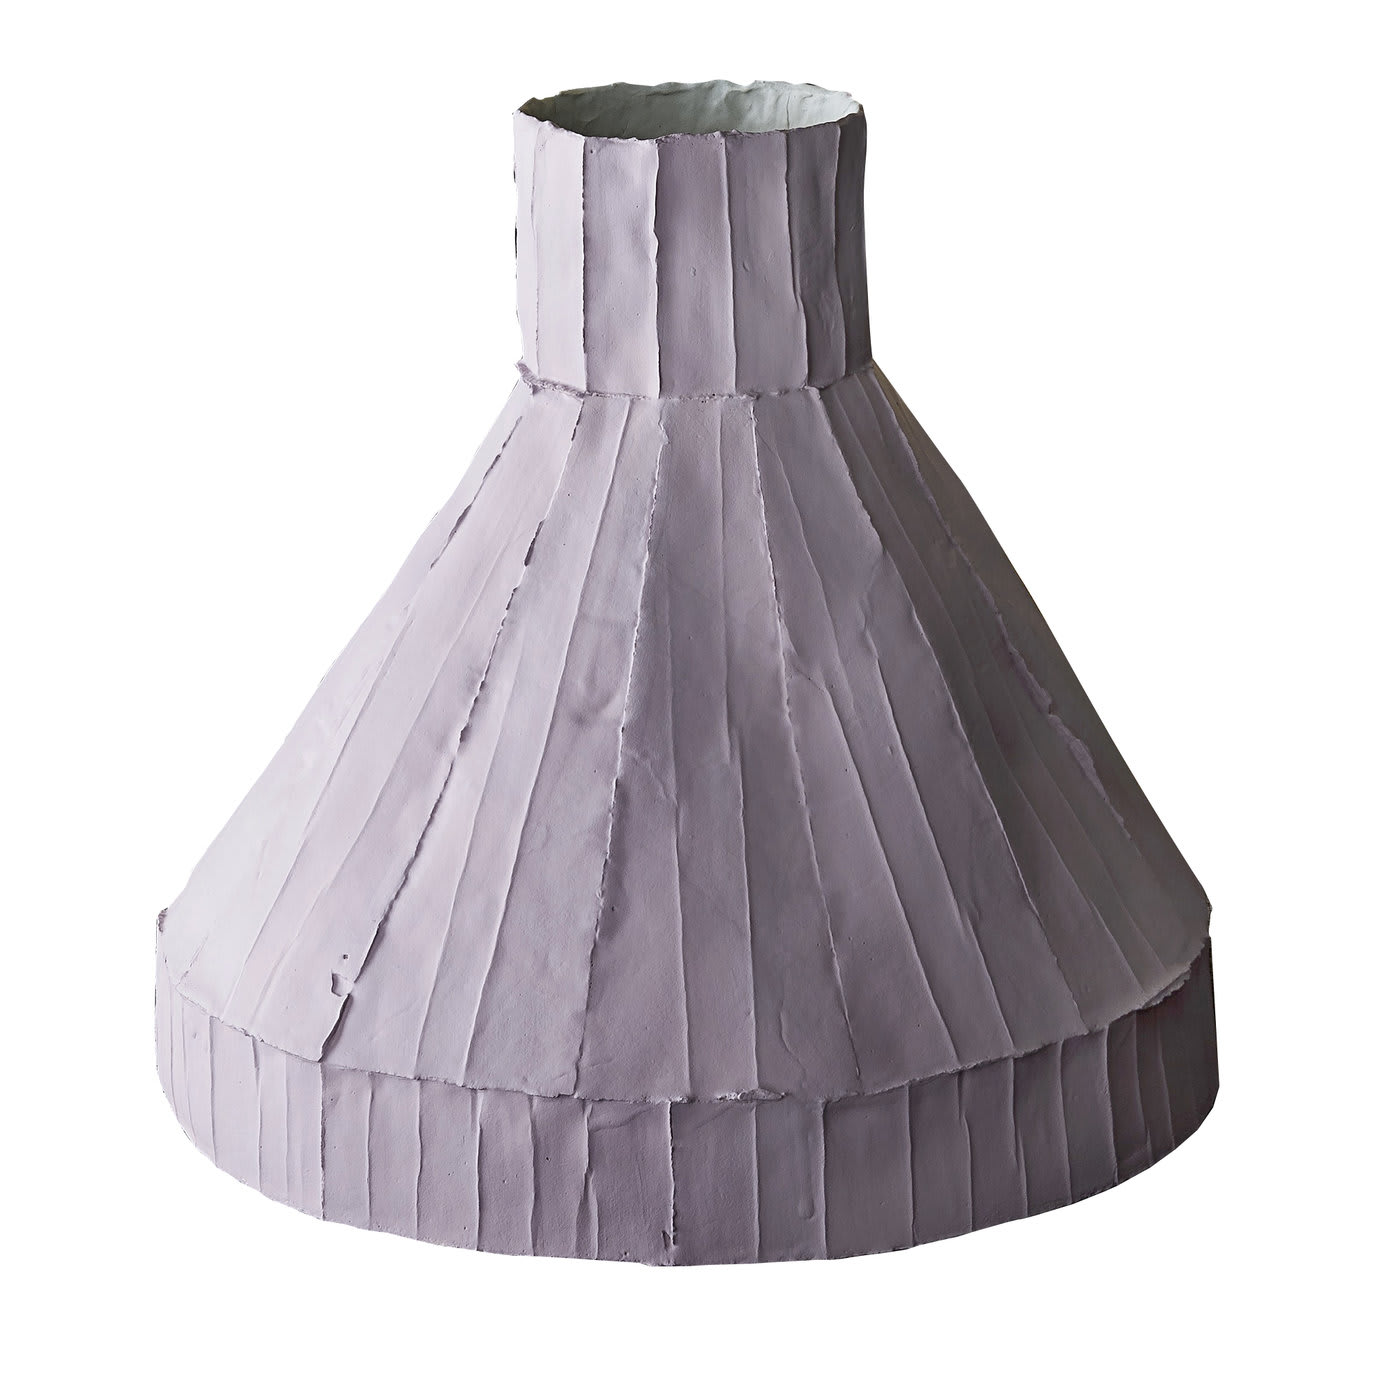 Vulcano Corteccia Lilac Low Vase - Paola Paronetto